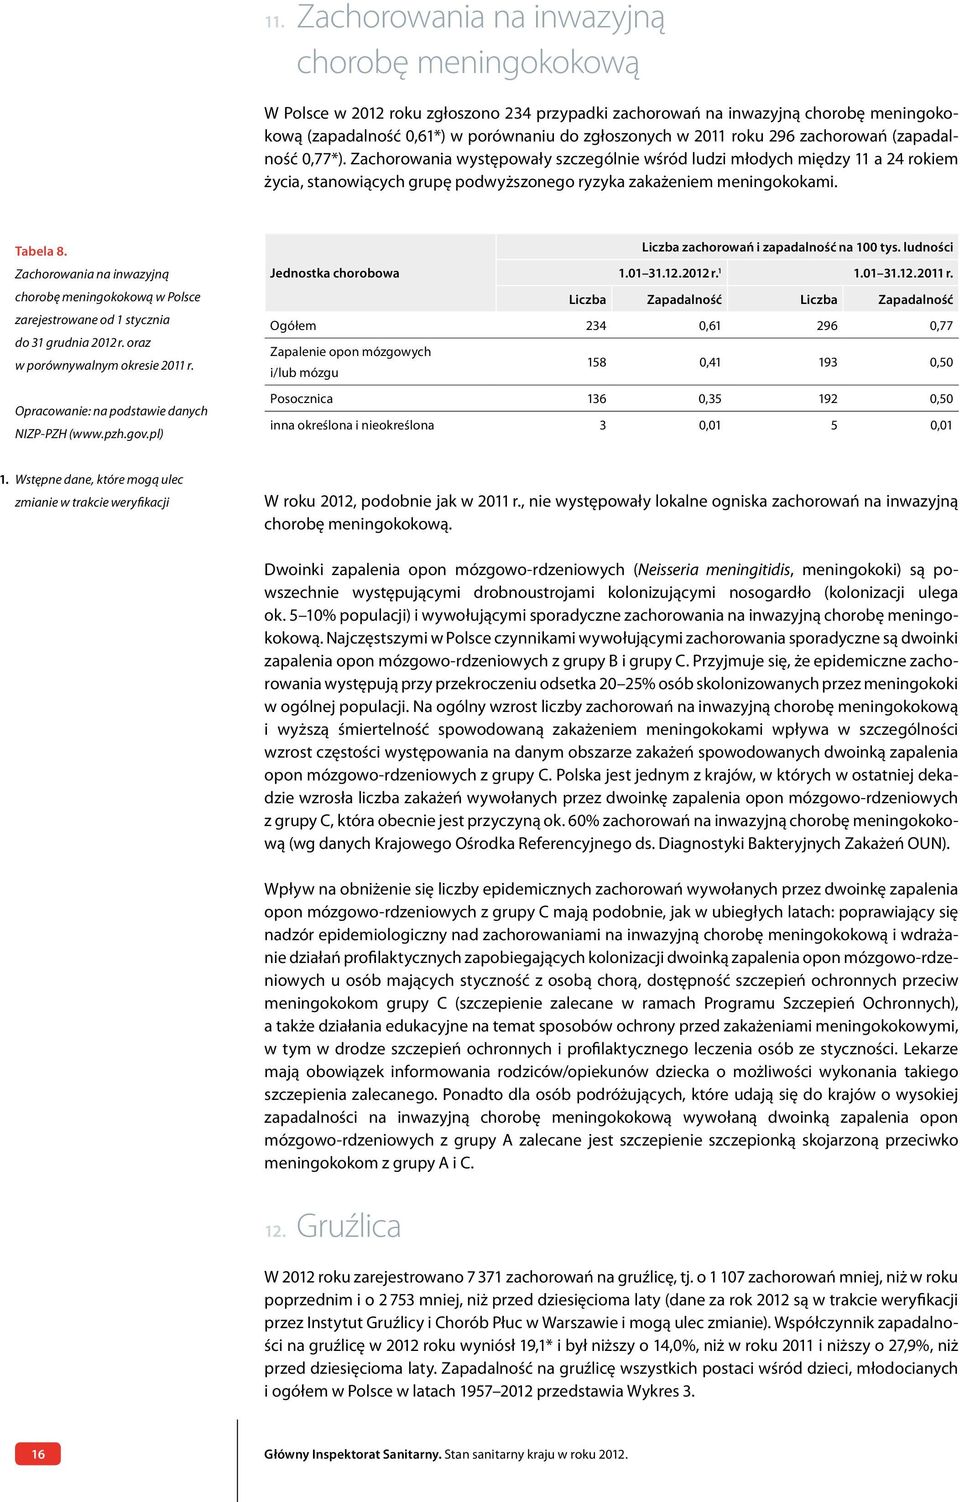 Tabela 8. Zachorowania na inwazyjną chorobę meningokokową w Polsce zarejestrowane od 1 stycznia do 31 grudnia 2012 r. oraz w porównywalnym okresie 2011 r.